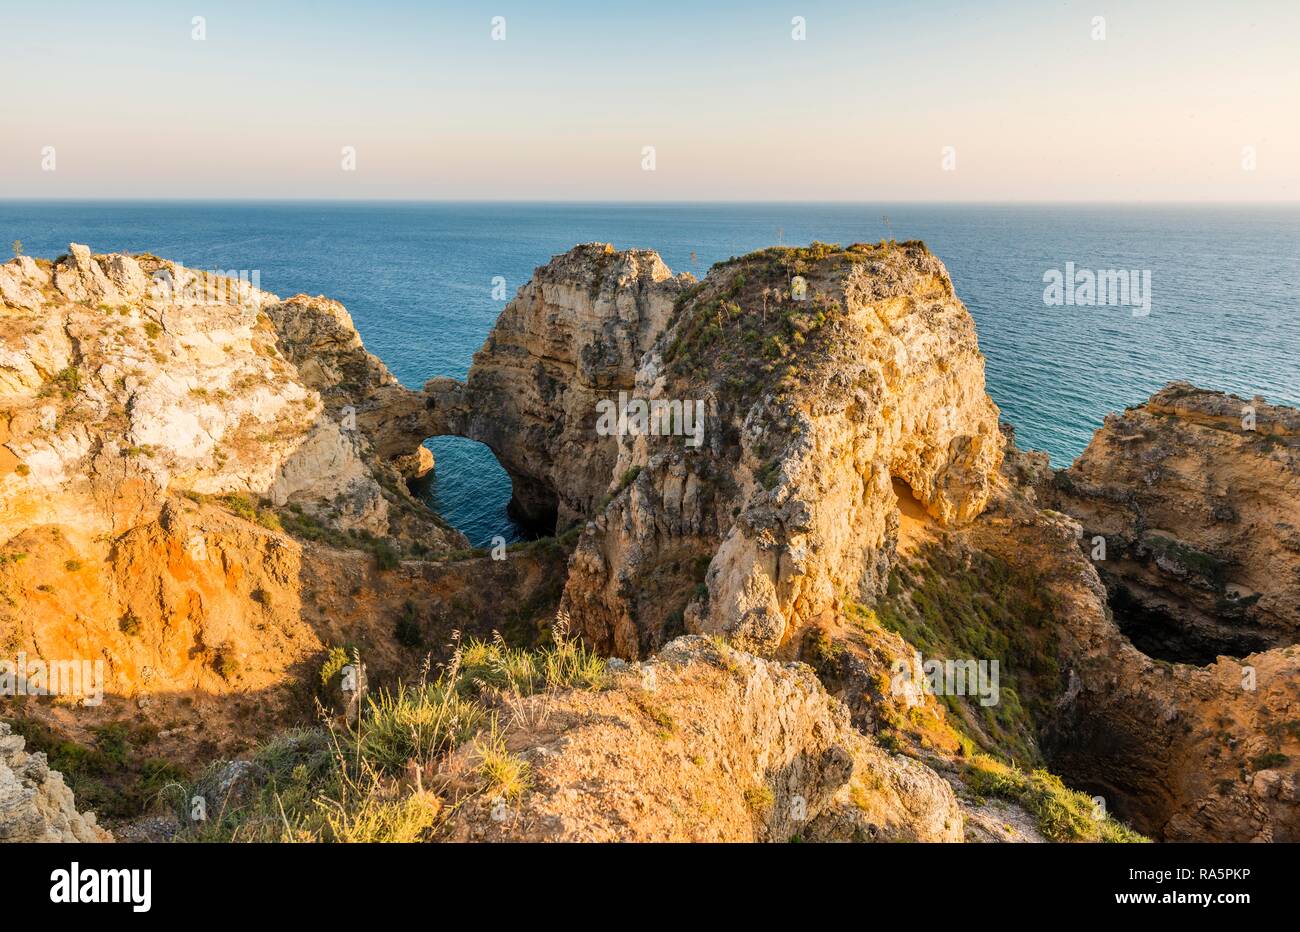 Ponta da Piedade, Schroffe Felsenküste von Sandstein, Felsformationen im Meer, Algarve, Lagos, Portugal Stockfoto